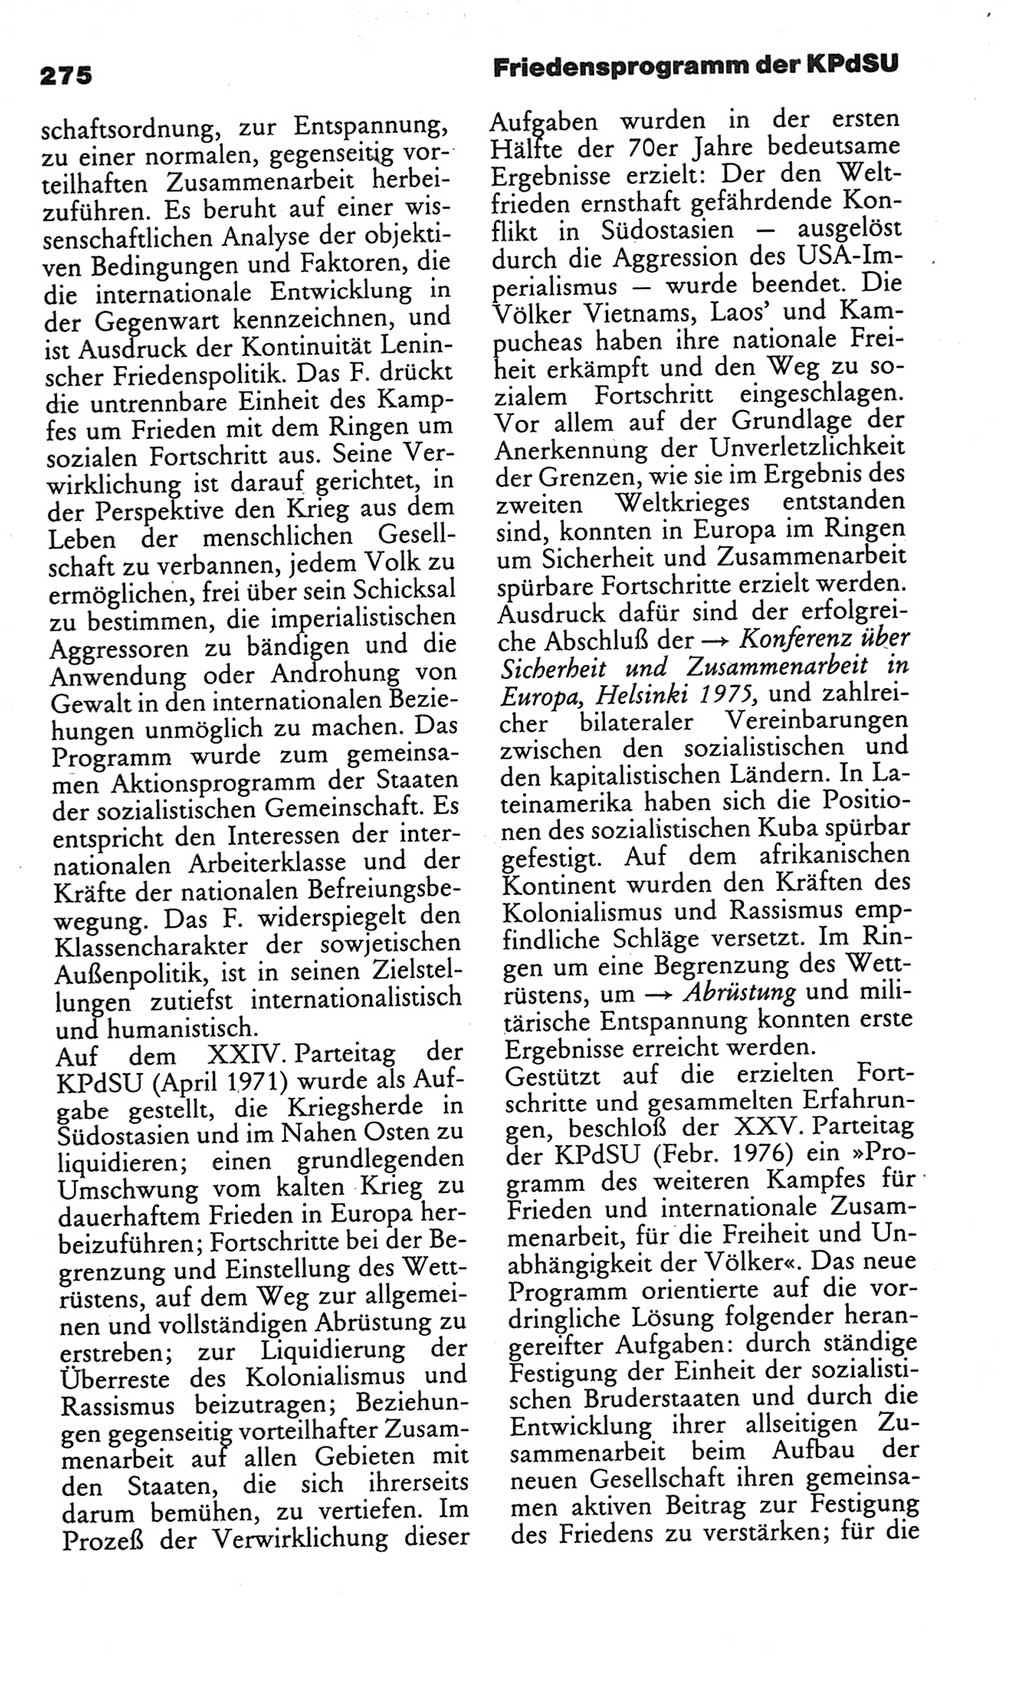 Kleines politisches Wörterbuch [Deutsche Demokratische Republik (DDR)] 1986, Seite 275 (Kl. pol. Wb. DDR 1986, S. 275)